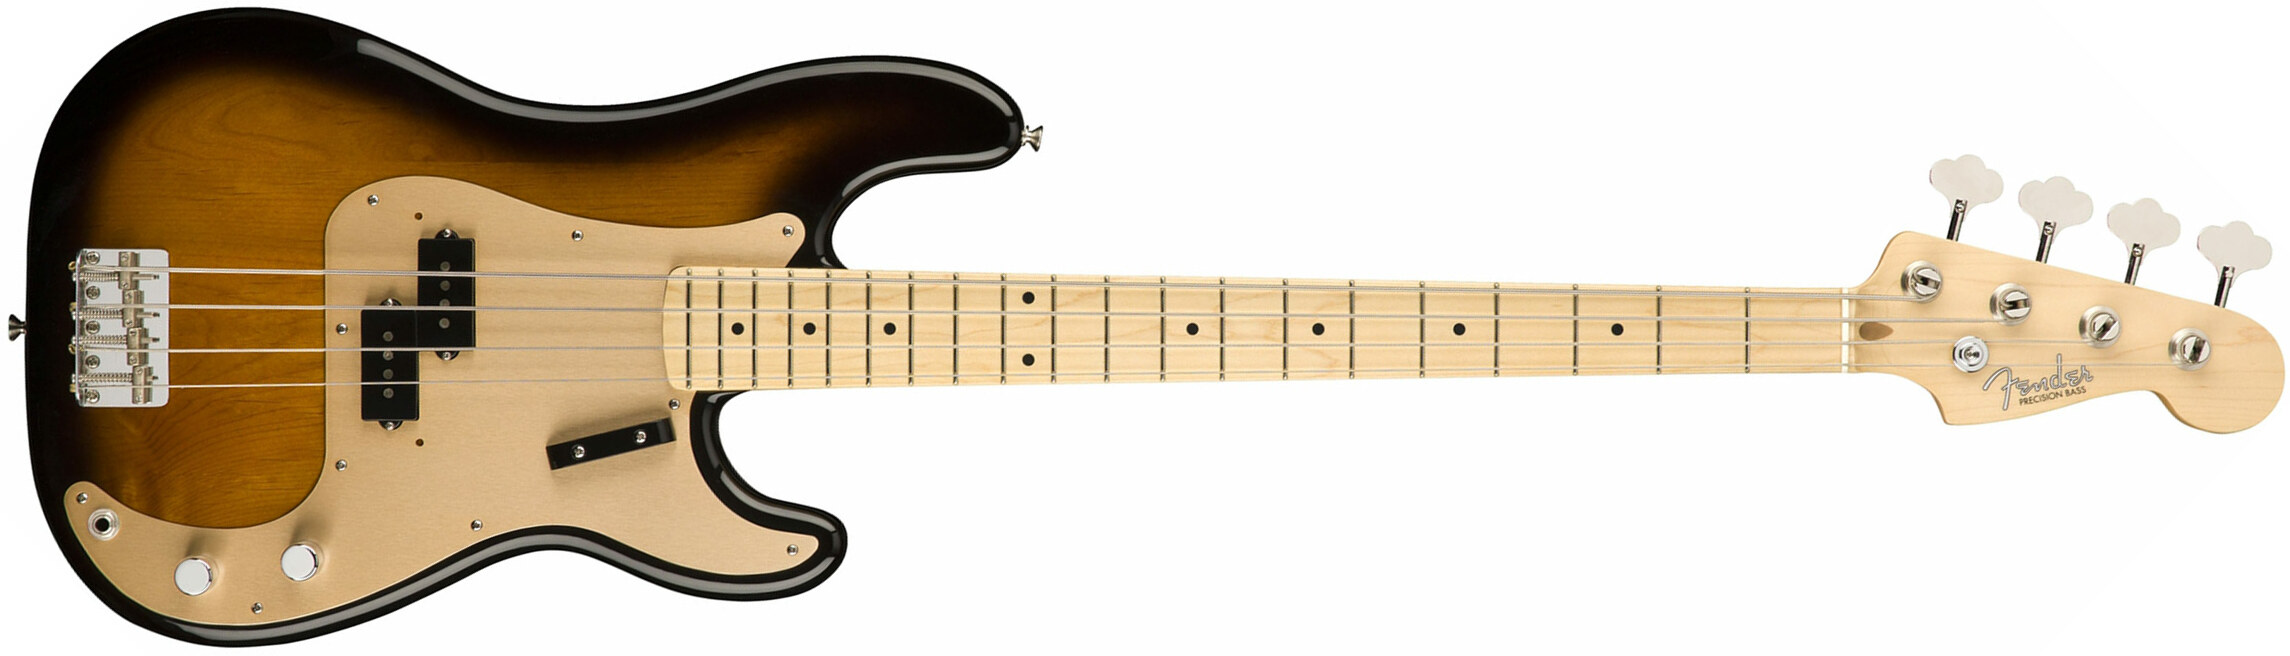 Fender Precision Bass '50s American Original Usa Mn - 2-color Sunburst - Basse Électrique Solid Body - Main picture